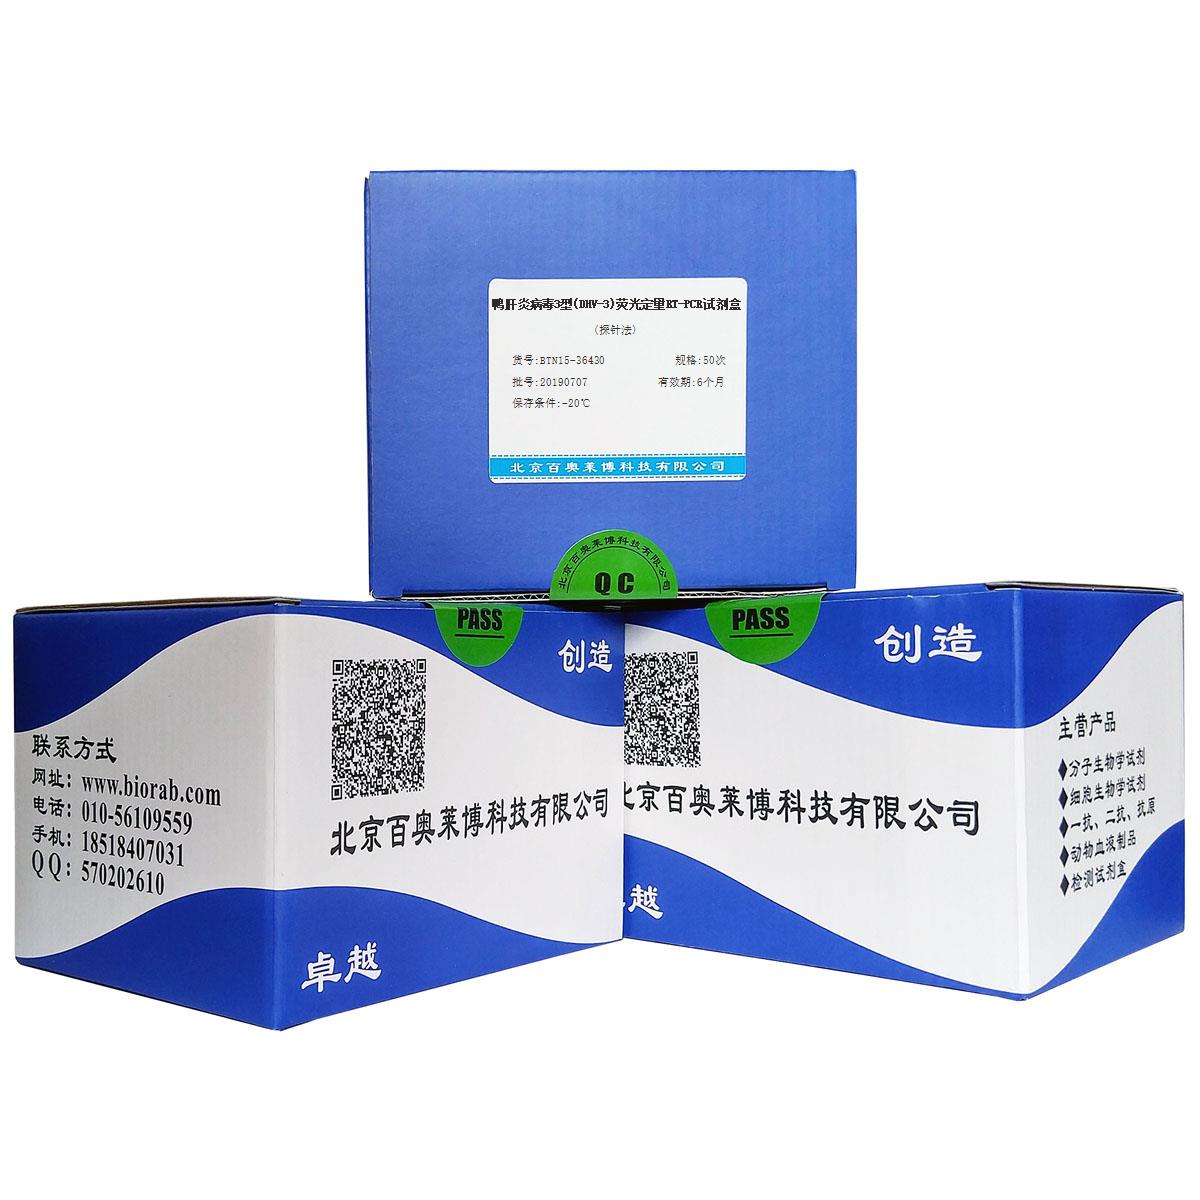 鸭肝炎病毒3型(DHV-3)荧光定量RT-PCR试剂盒(探针法)